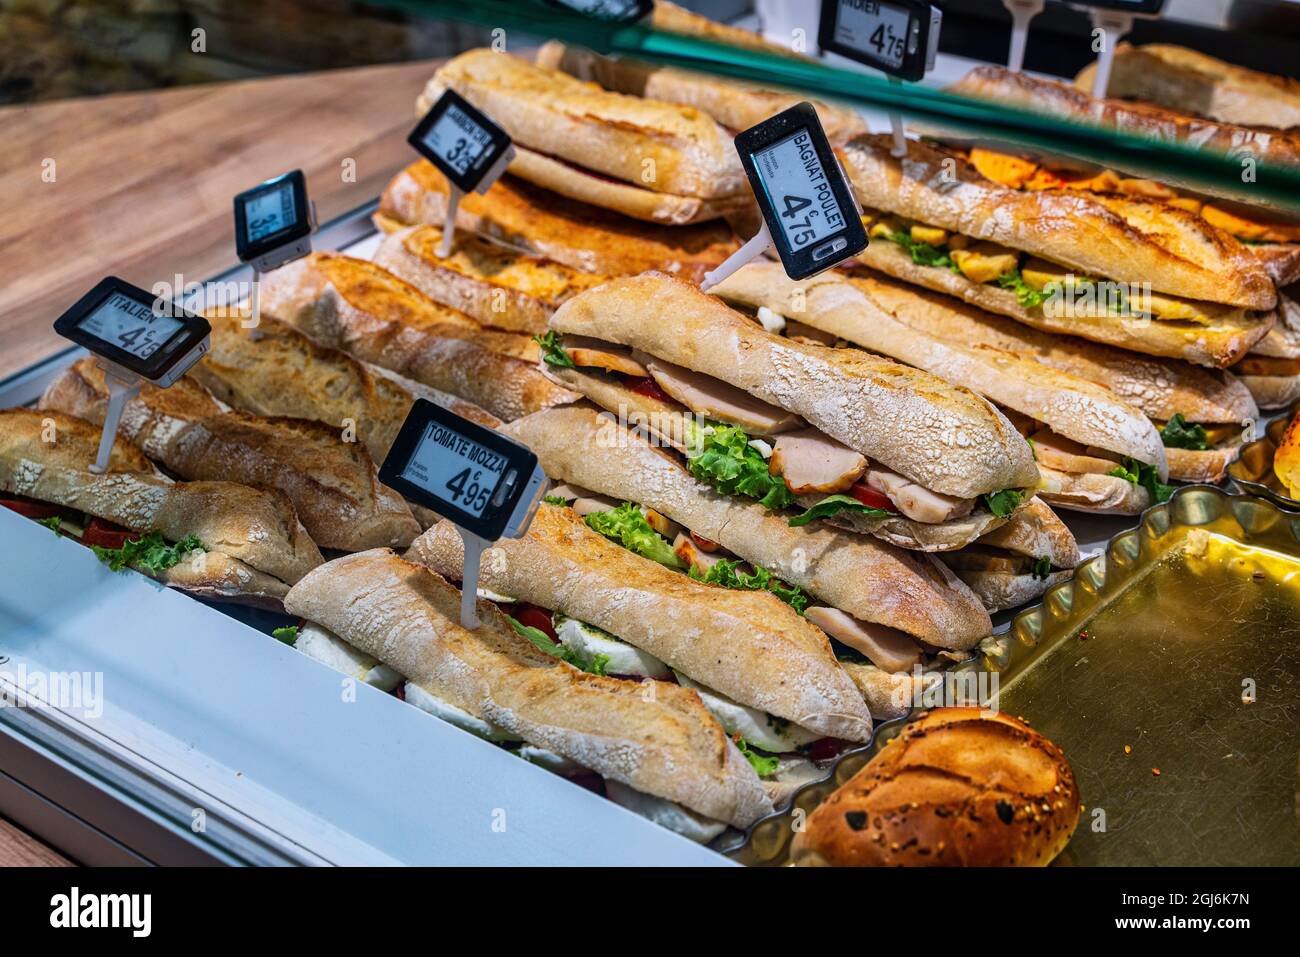 Sandwich riempiti con prodotti tipici esposti nella finestra pronti per la vendita. Regione Auvergne-Rhône-Alpes, isère département, Francia, Europa Foto Stock